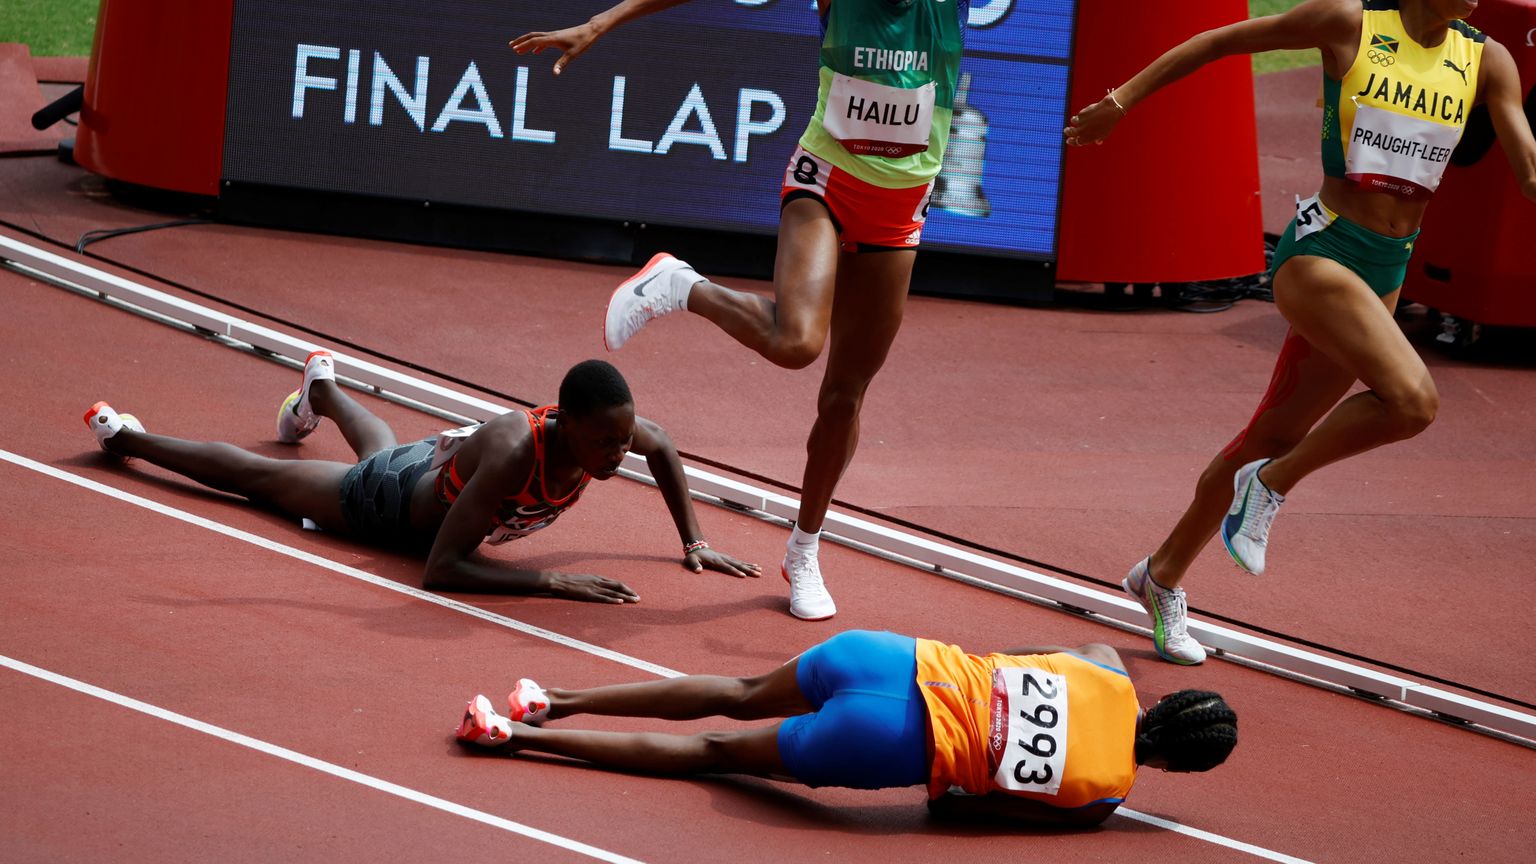 Hollandi jooksja Sifa Hassan (2993) põrkas Tokyo olümpia naiste 1500 meetri eeljooksus kokku Keenia jooksja Edina Jebitokiga ja kukkus pikali